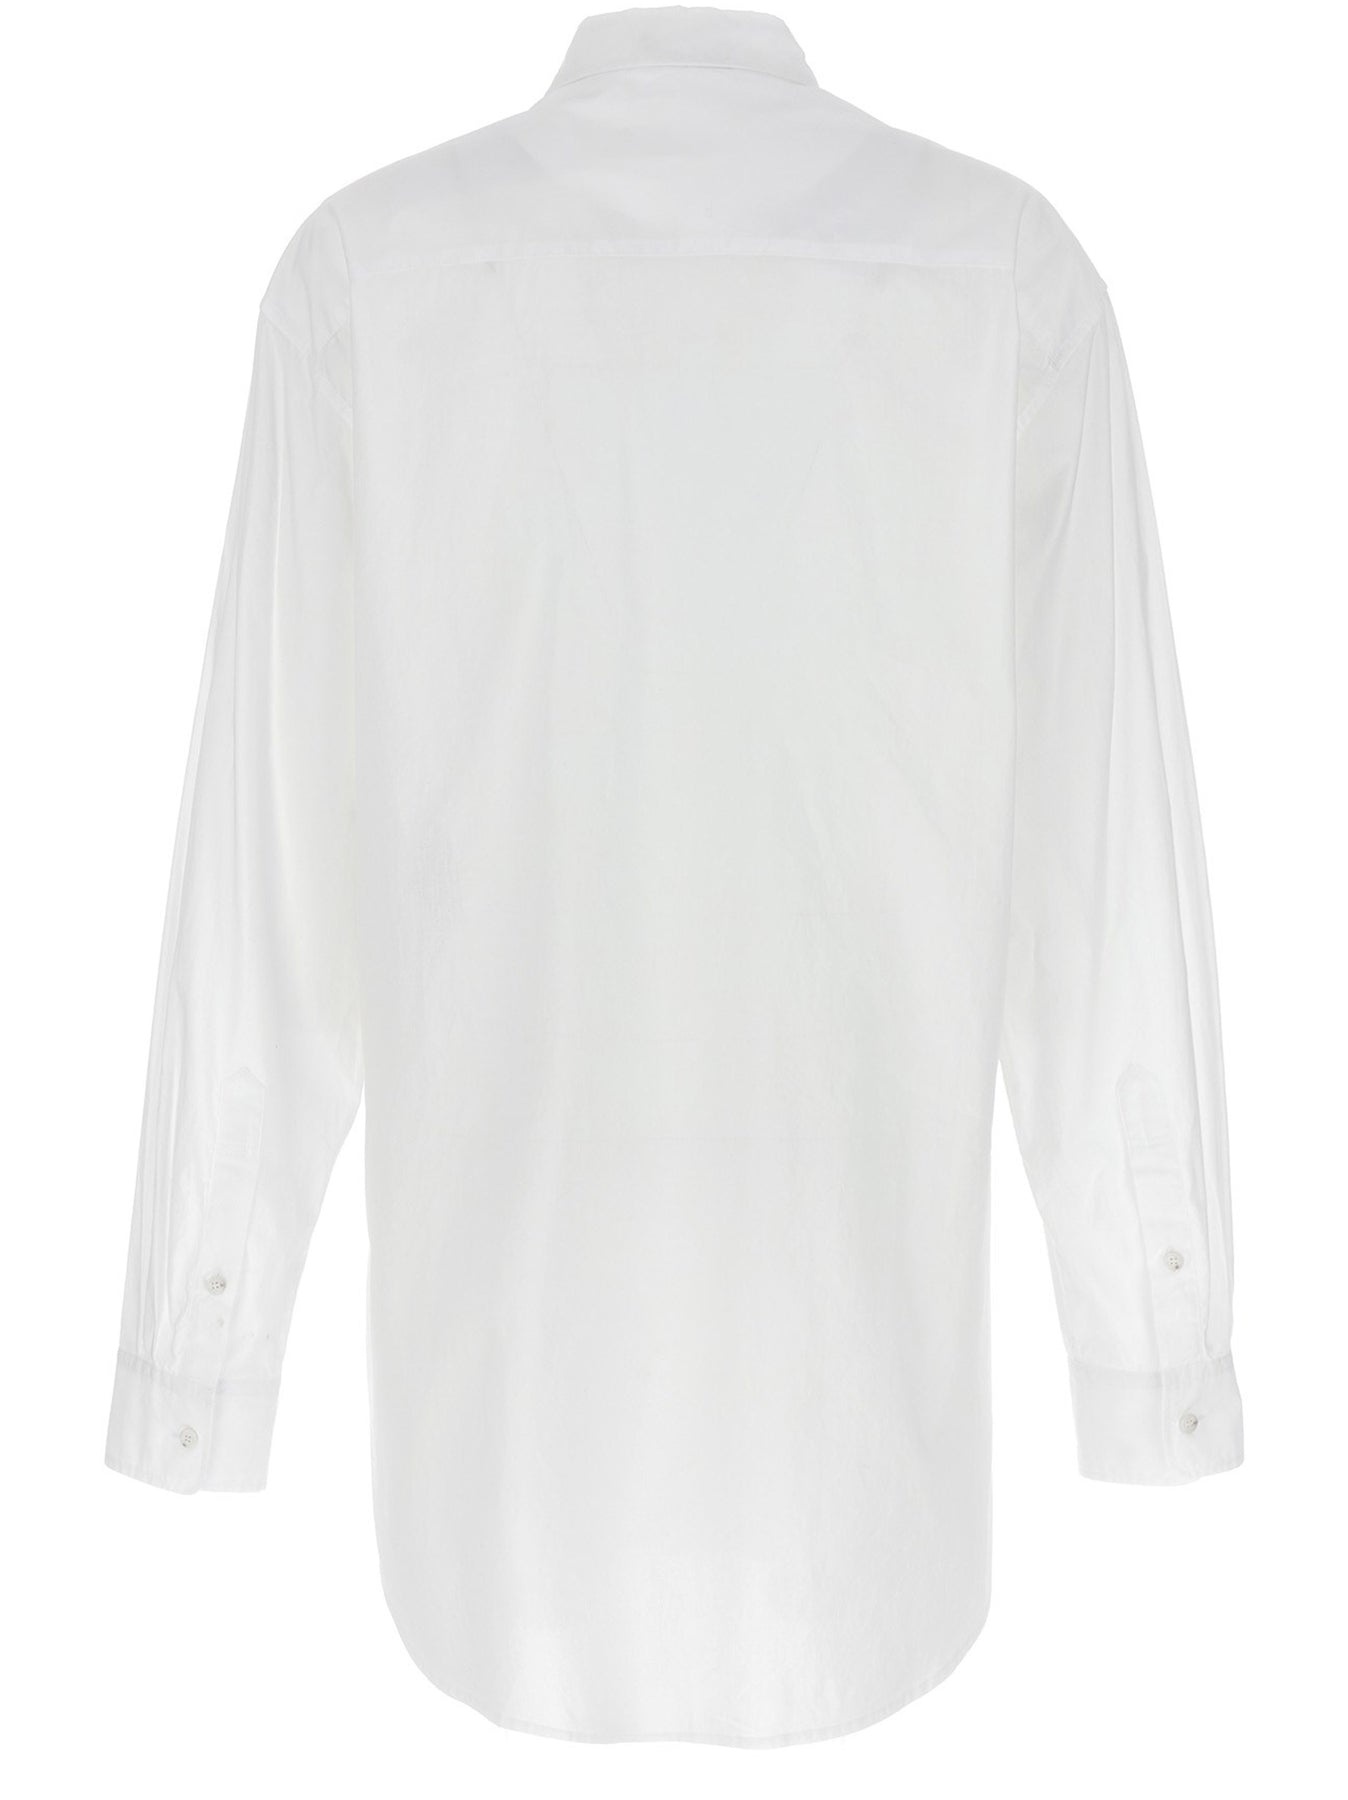 Elisabeth Shirt, Blouse White - 2